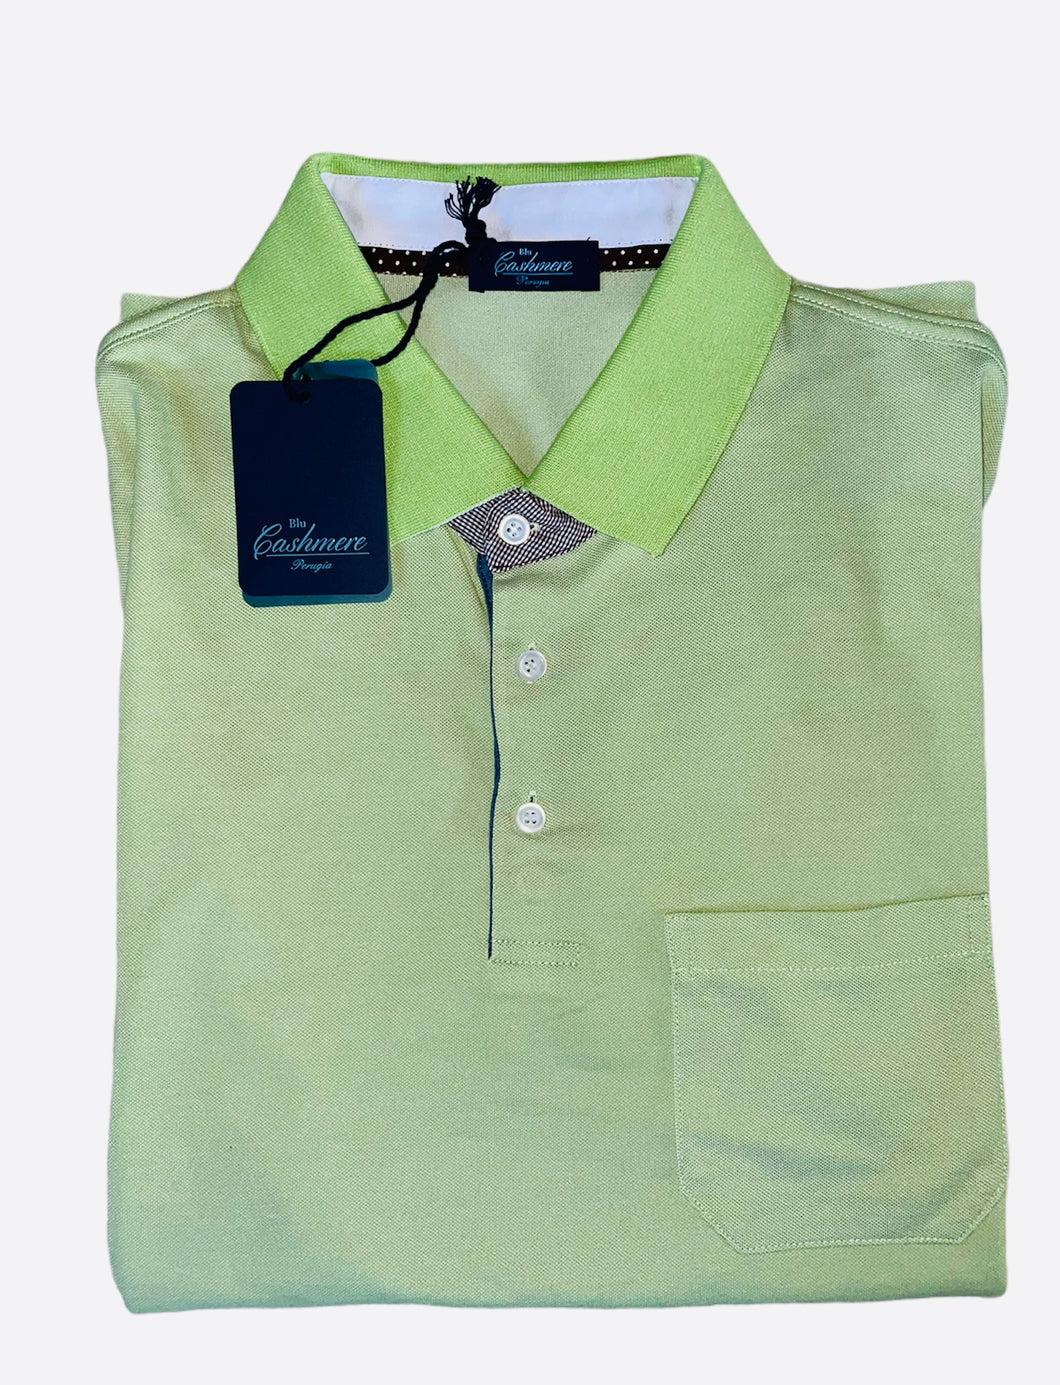 Polo Uomo cotone e seta verde SC-50%  mela Blu Cashmere manica corta con taschino |Emme Fashion Store